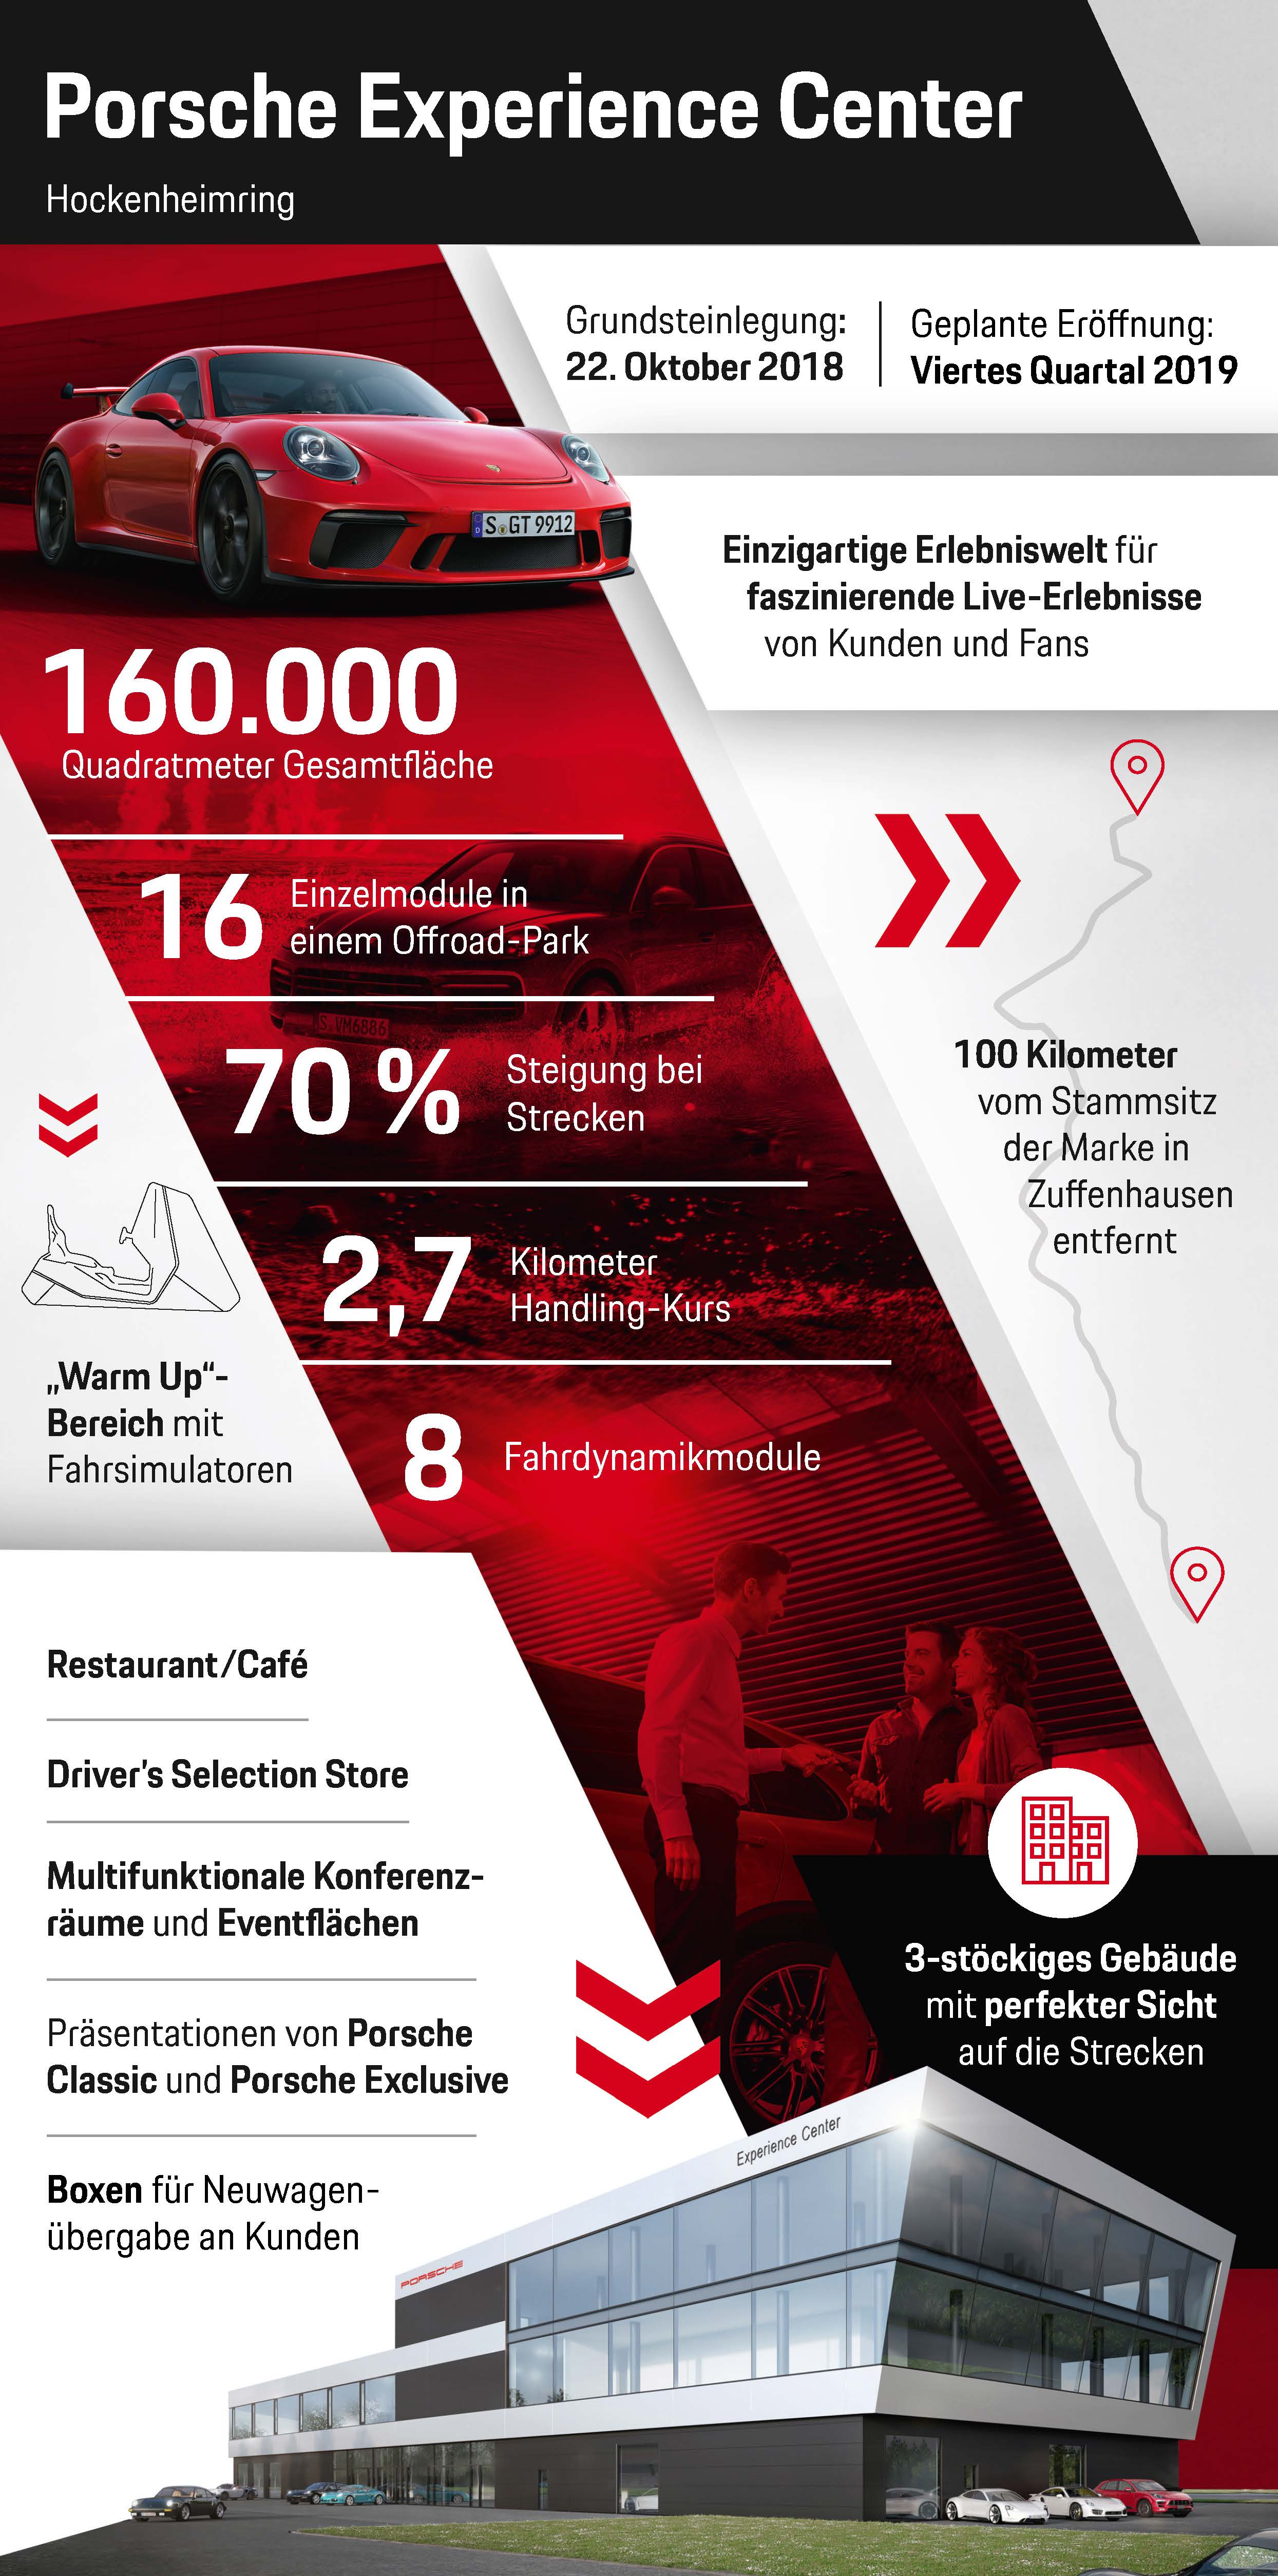  Porsche Experience Center Hockenheimring, Infografik, 2018, Porsche AG